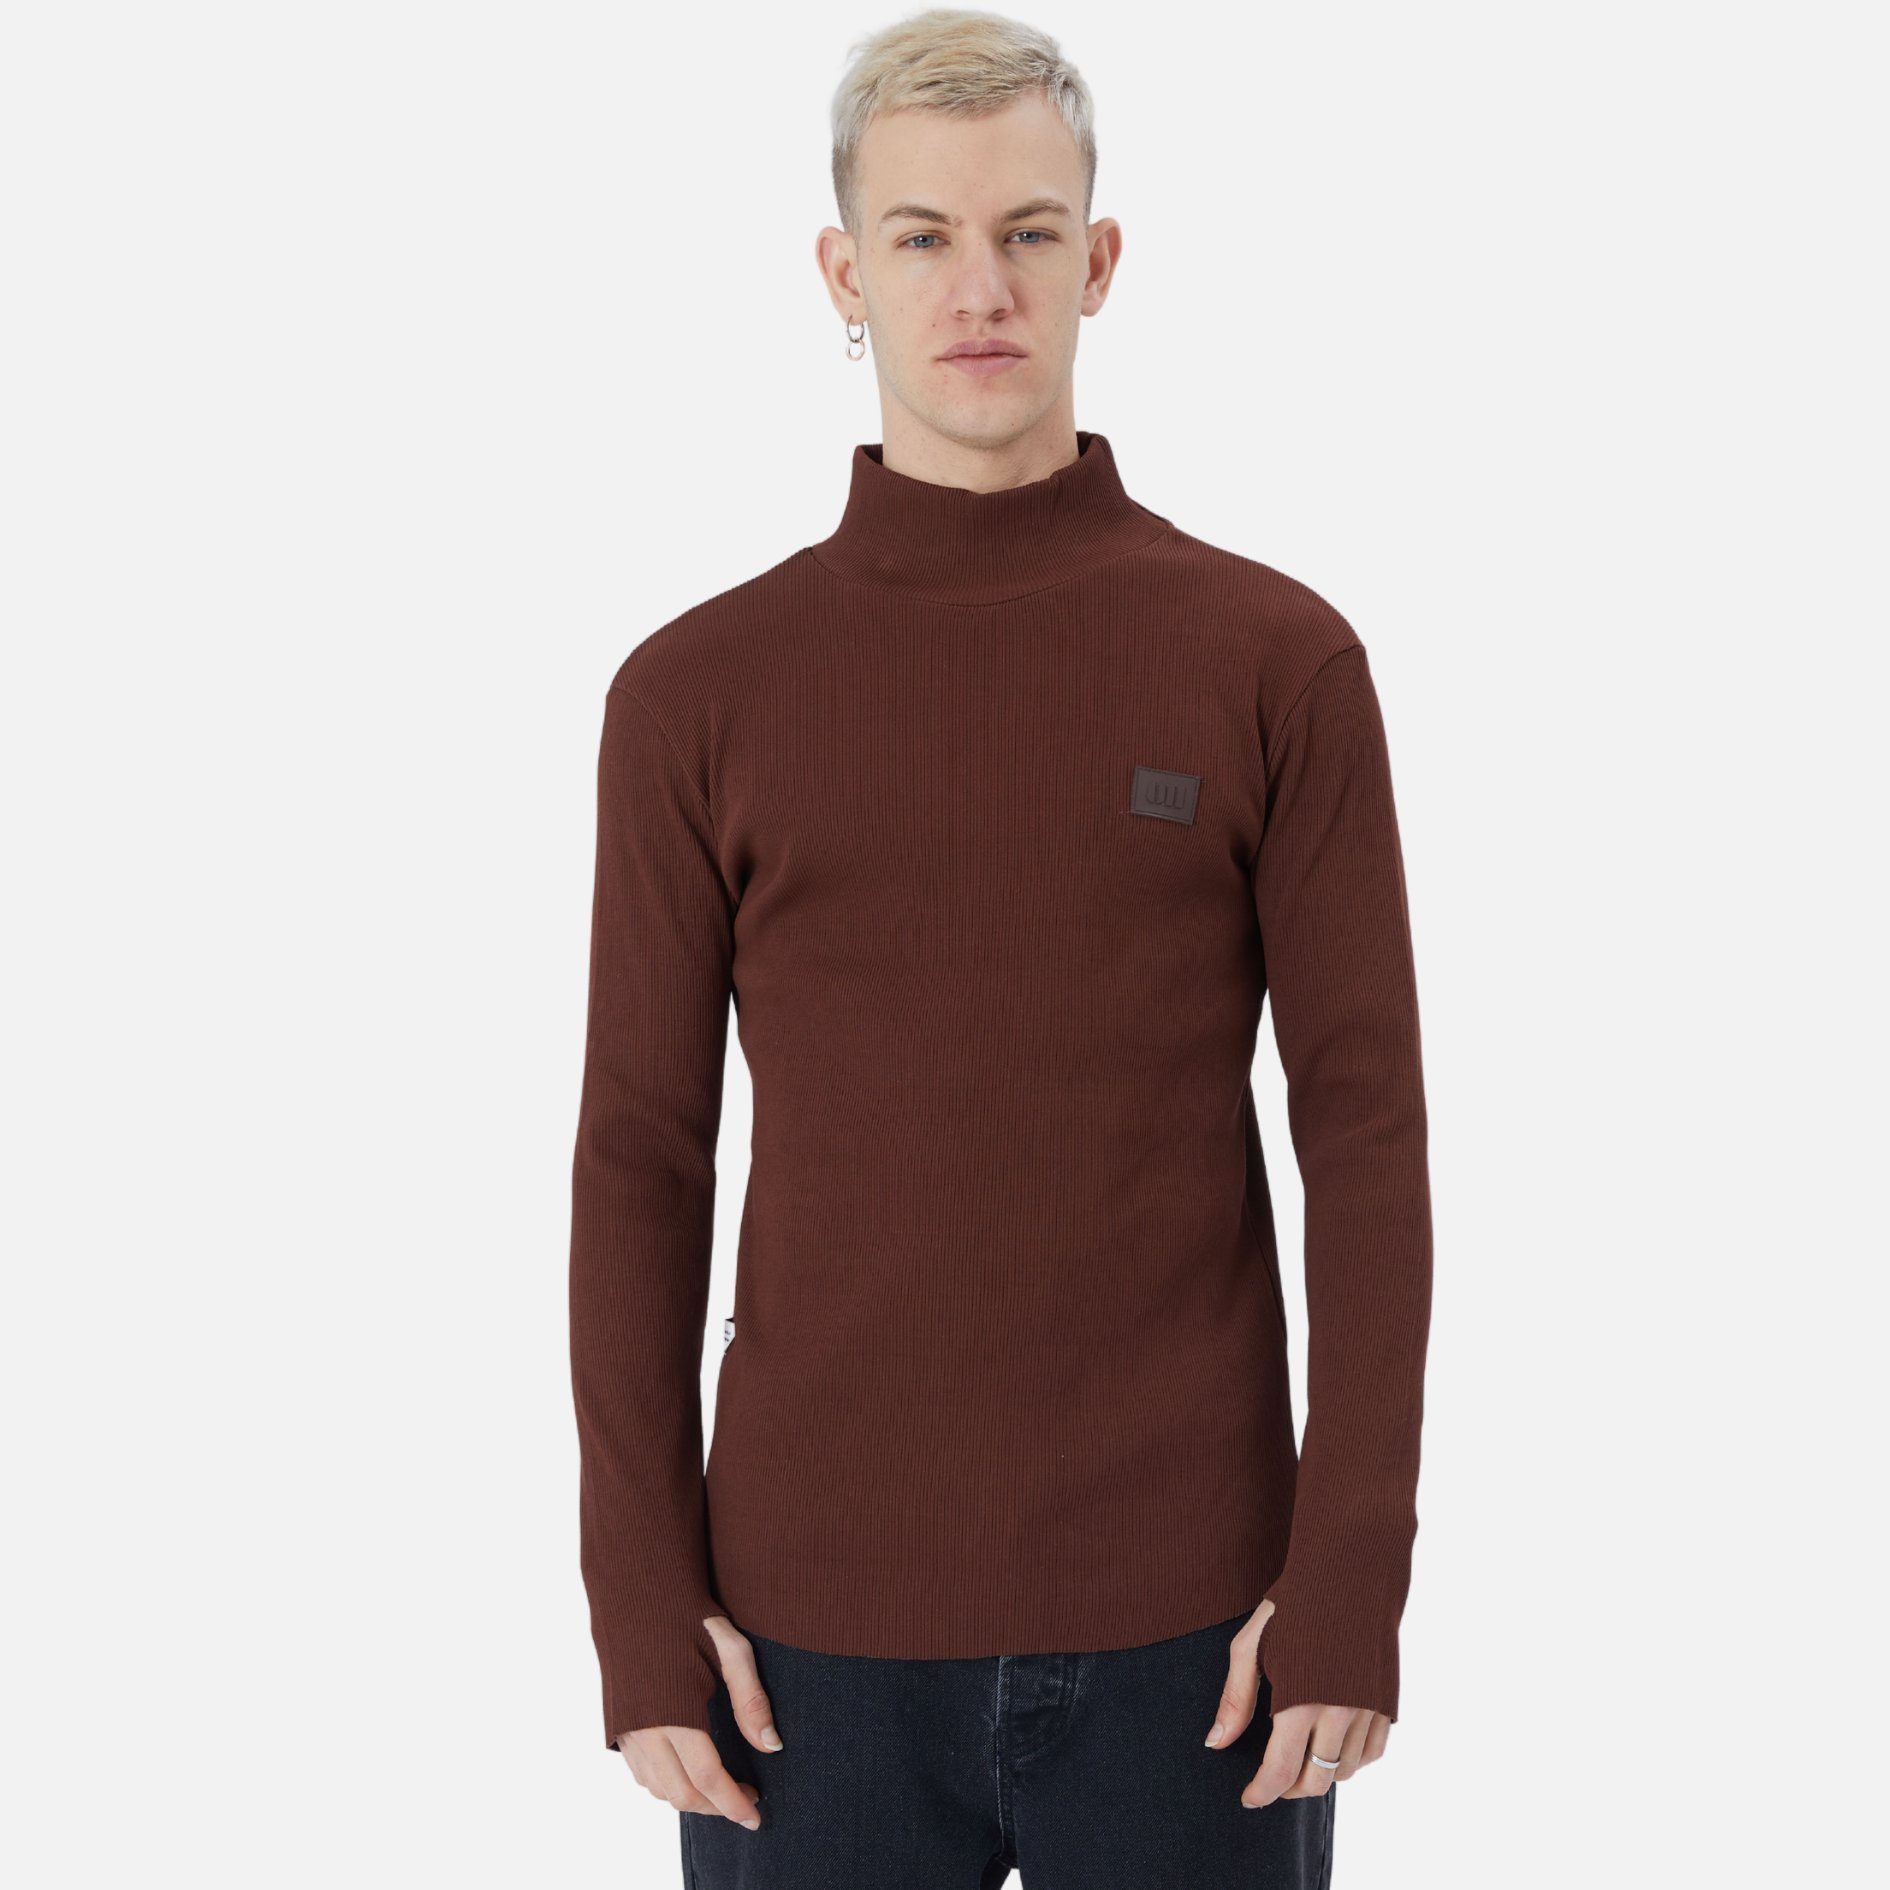 COFI Casuals Sweatshirt Herren Rundhals Sweatshirt Regular Fit Pullover Braun